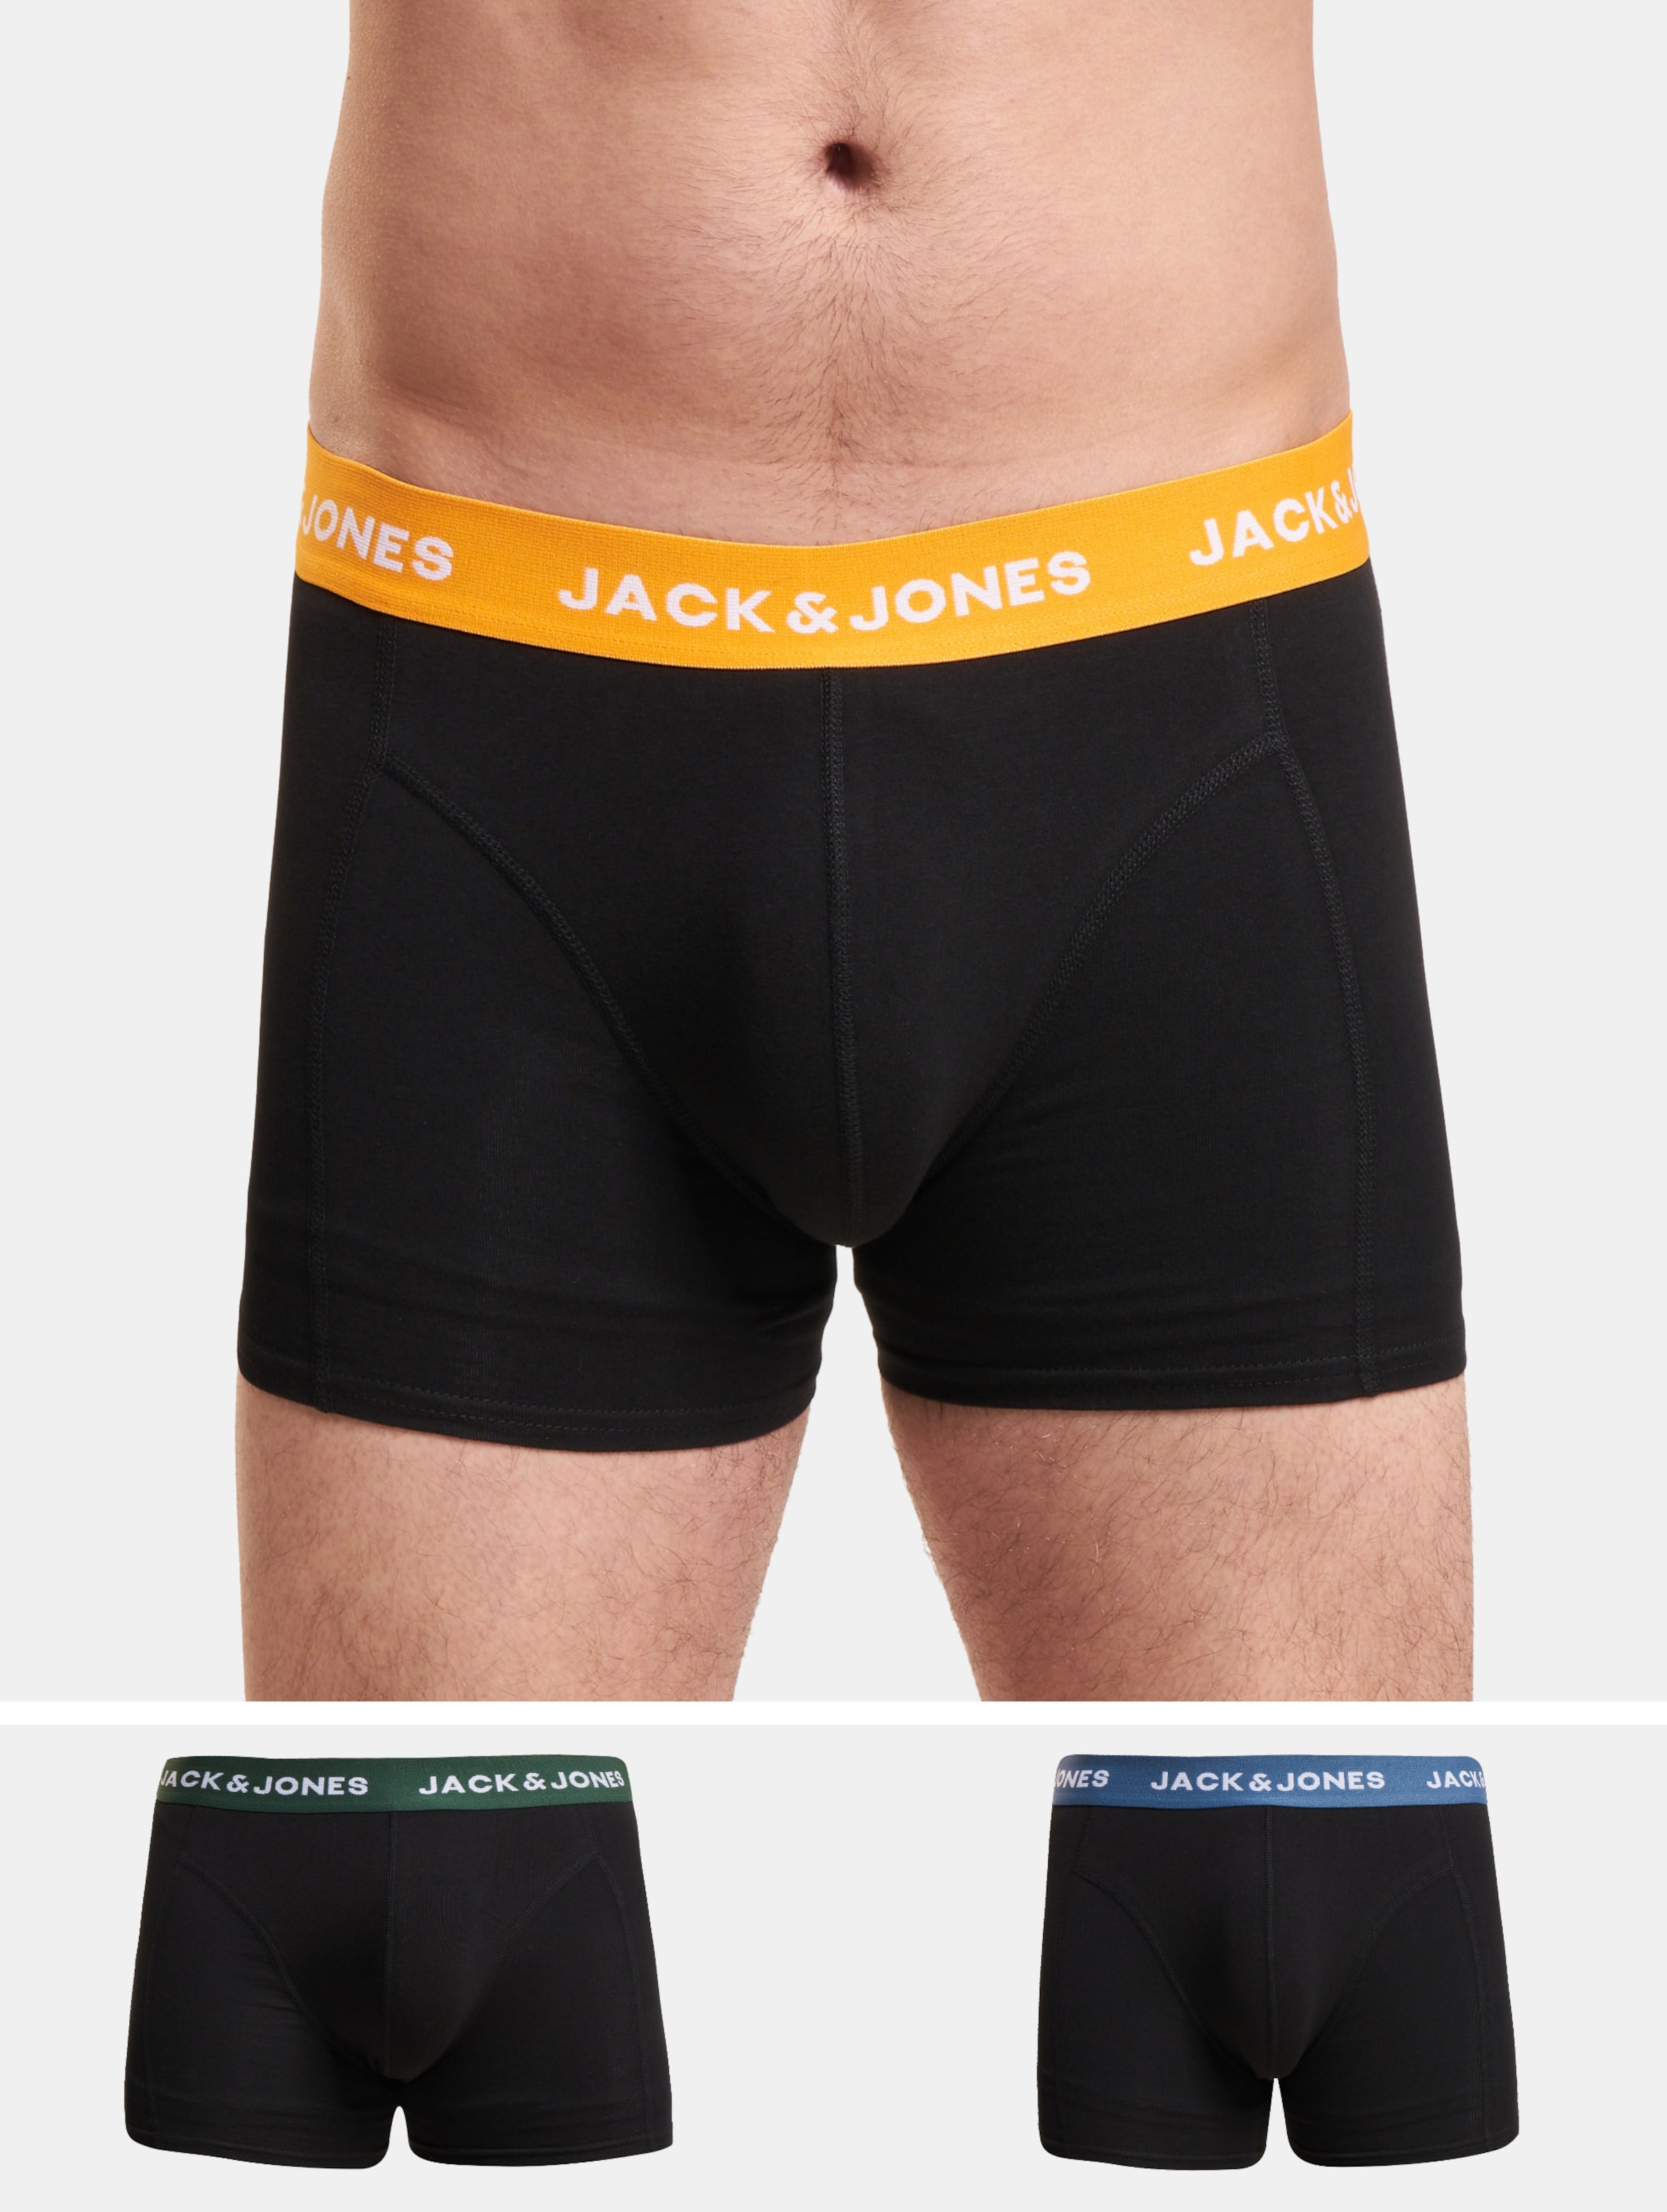 JACK & JONES Jacgab trunks (3-pack) - heren boxers normale lengte - donkergroen en zwart - Maat: L